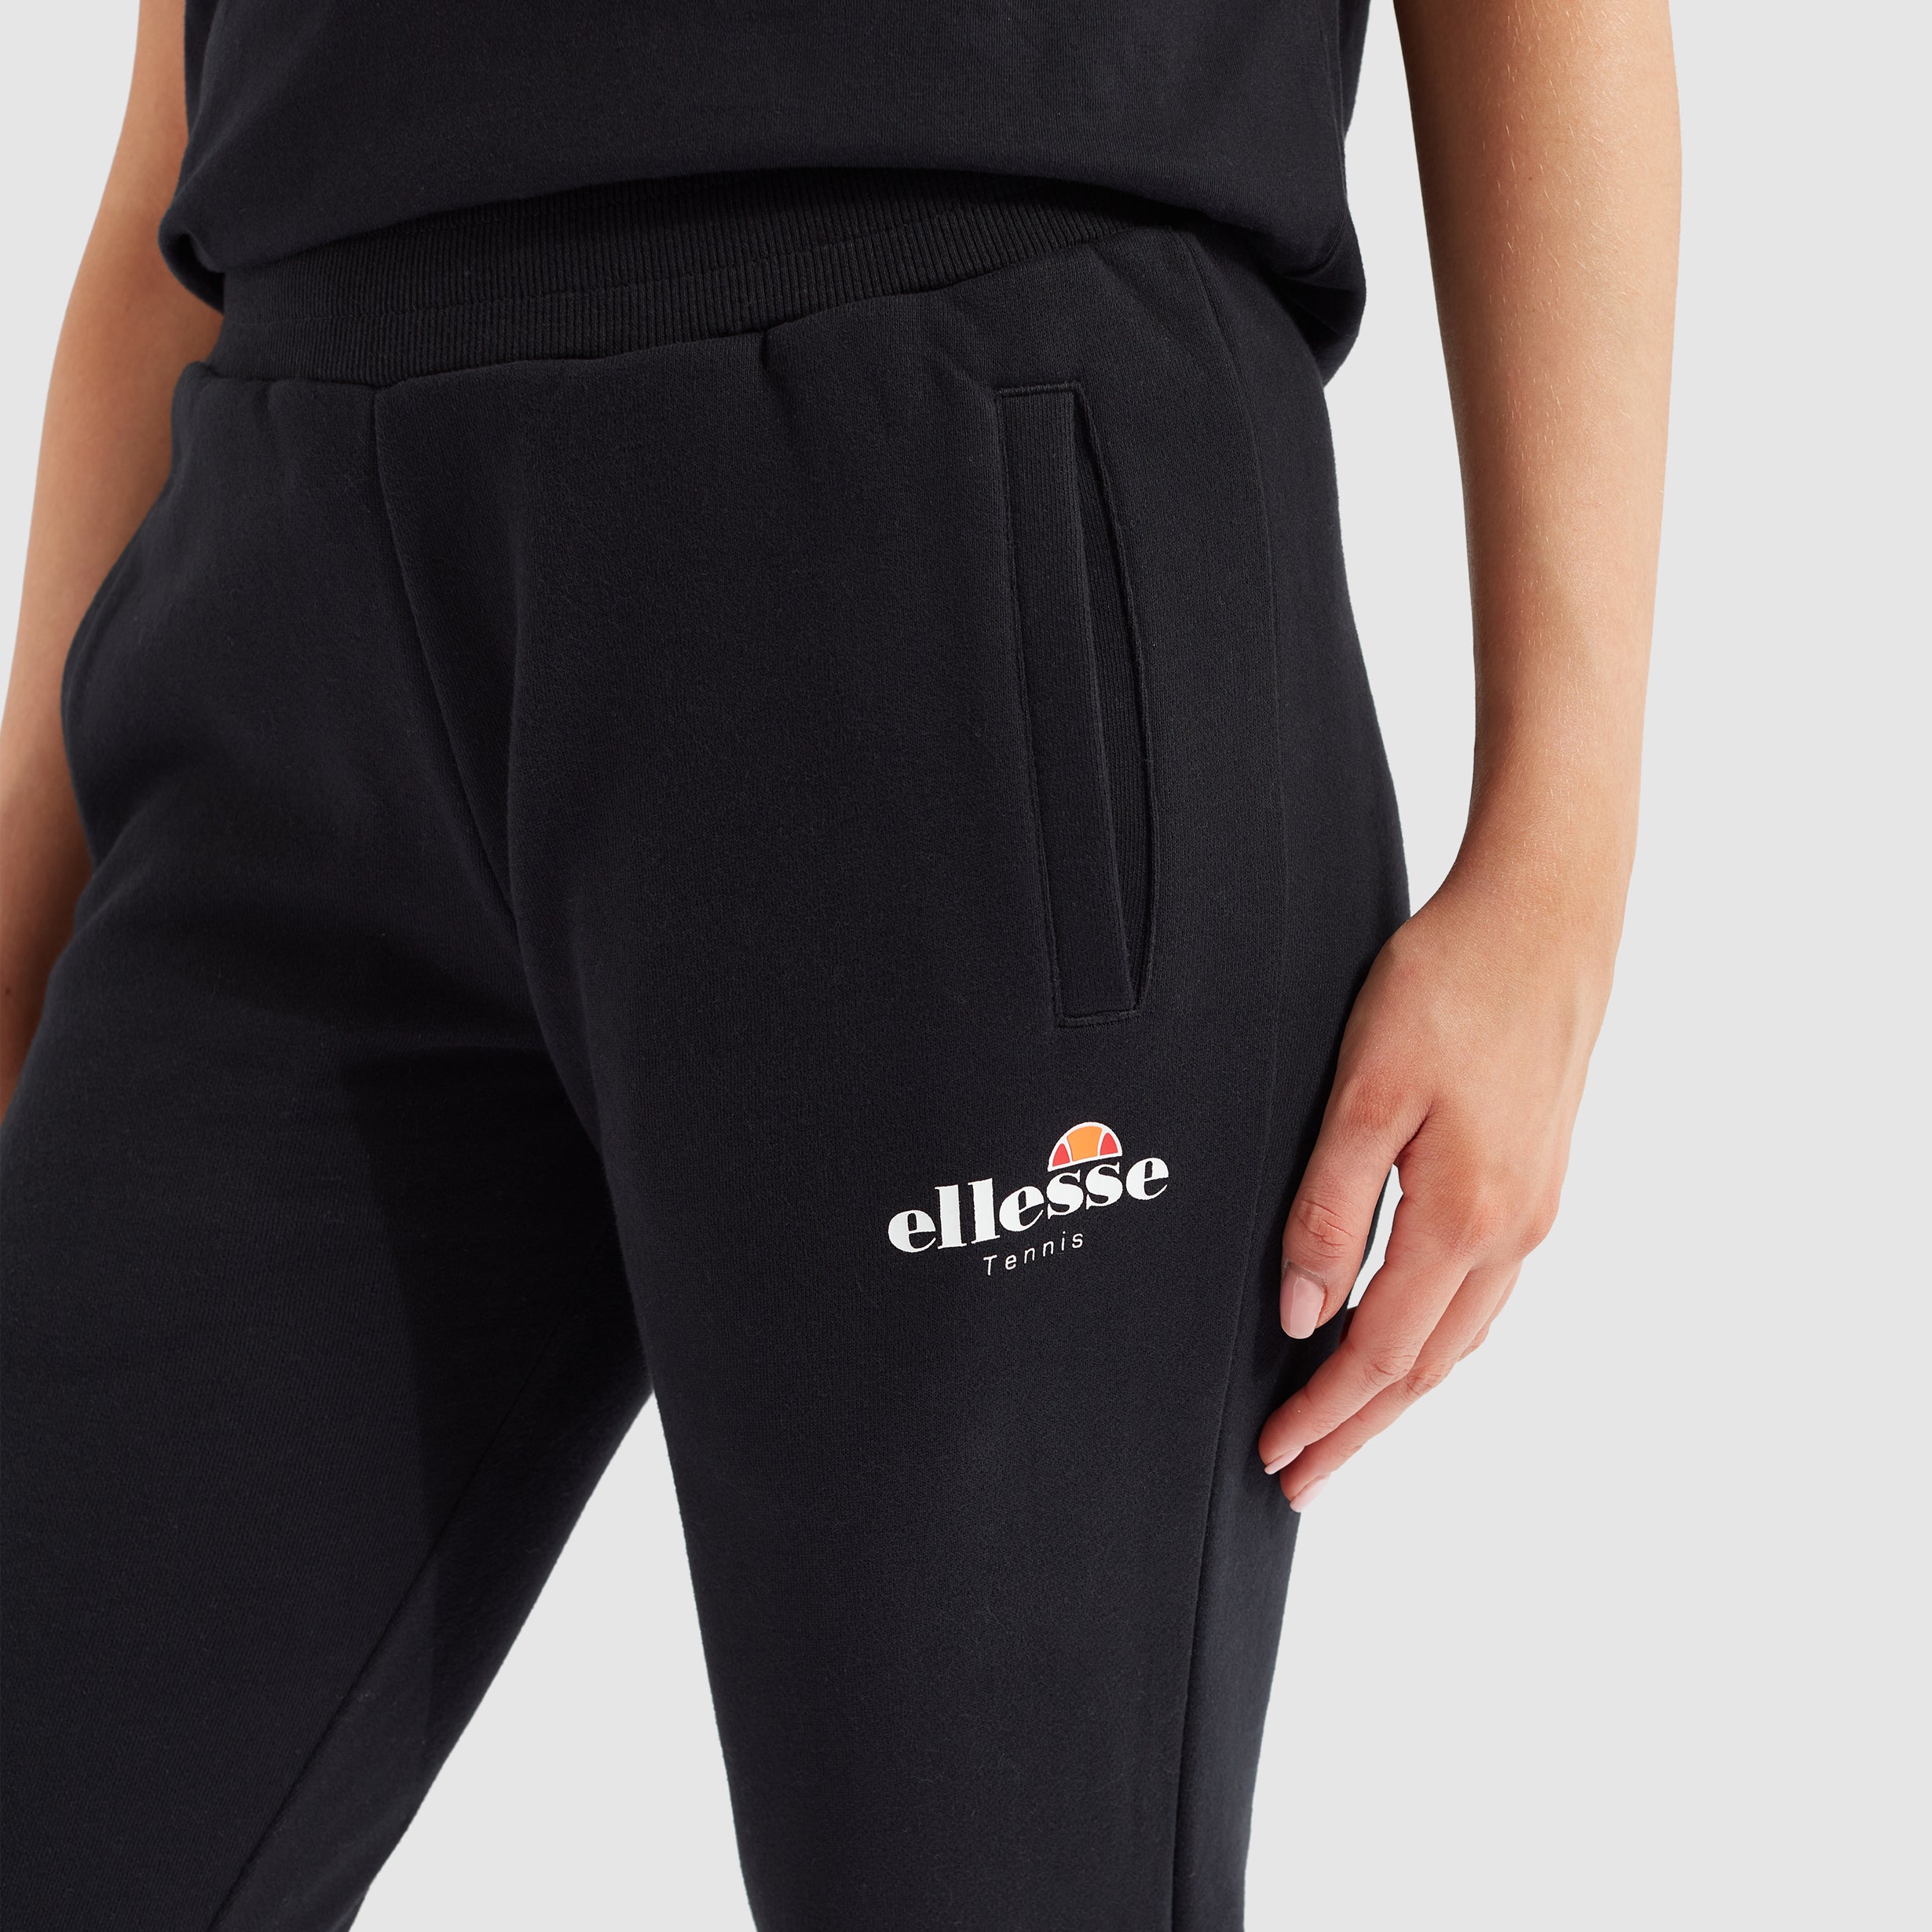 Buy Pants from Ellesse online